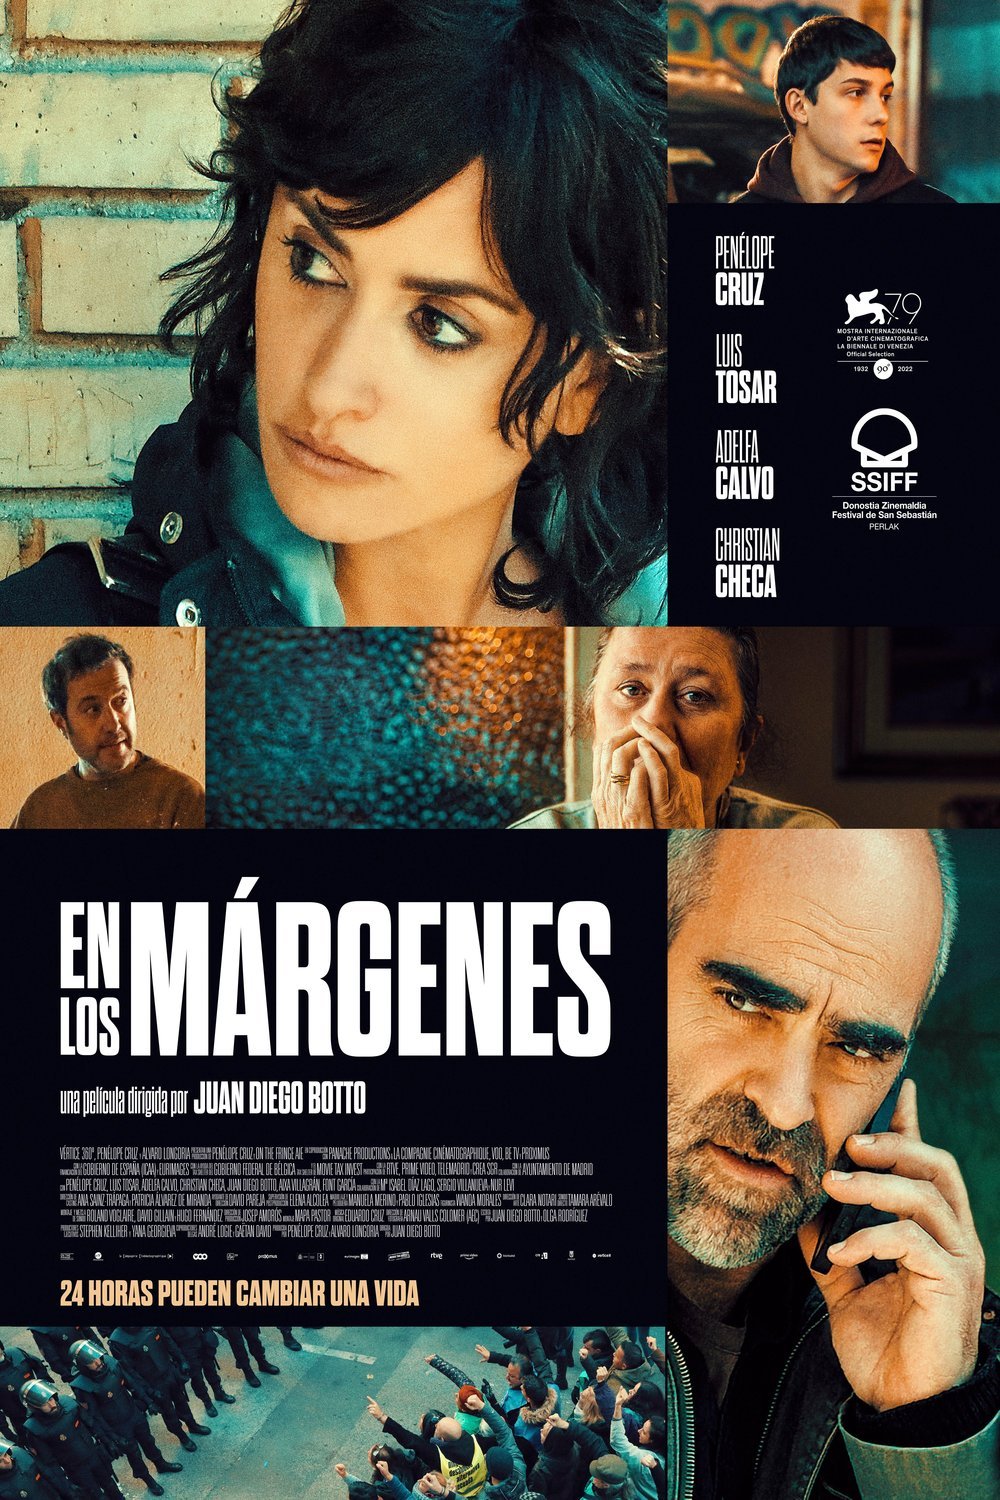 L'affiche originale du film En los márgenes en espagnol